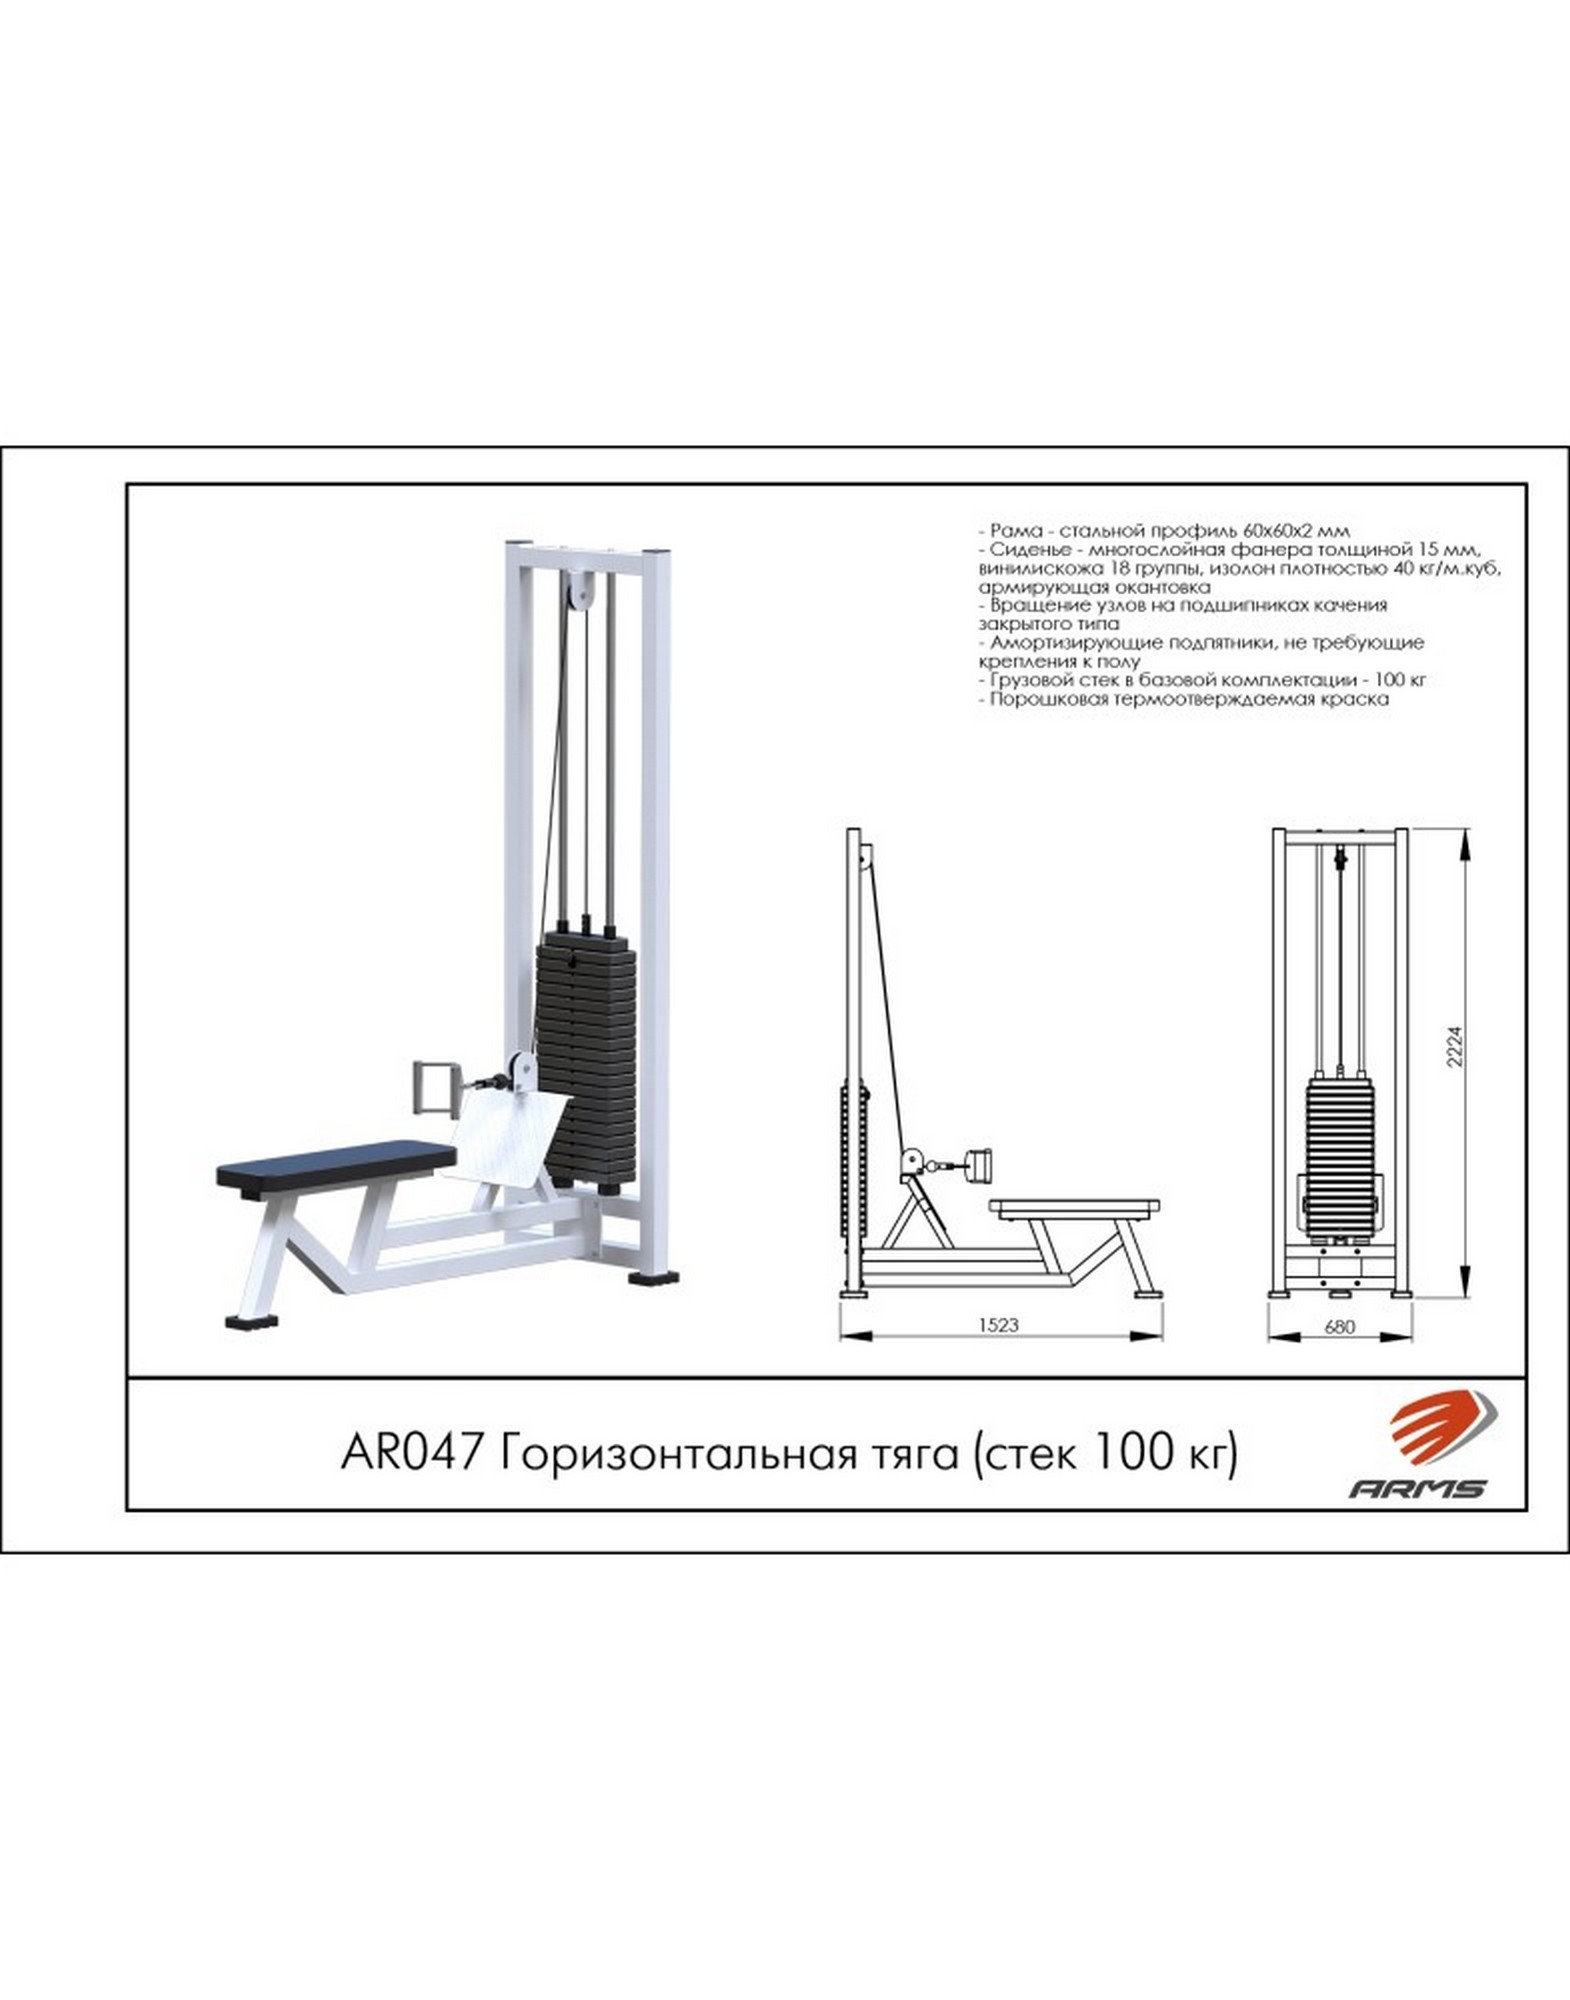 Горизонтальная тяга ARMS (стек 100кг) AR047 1570_2000